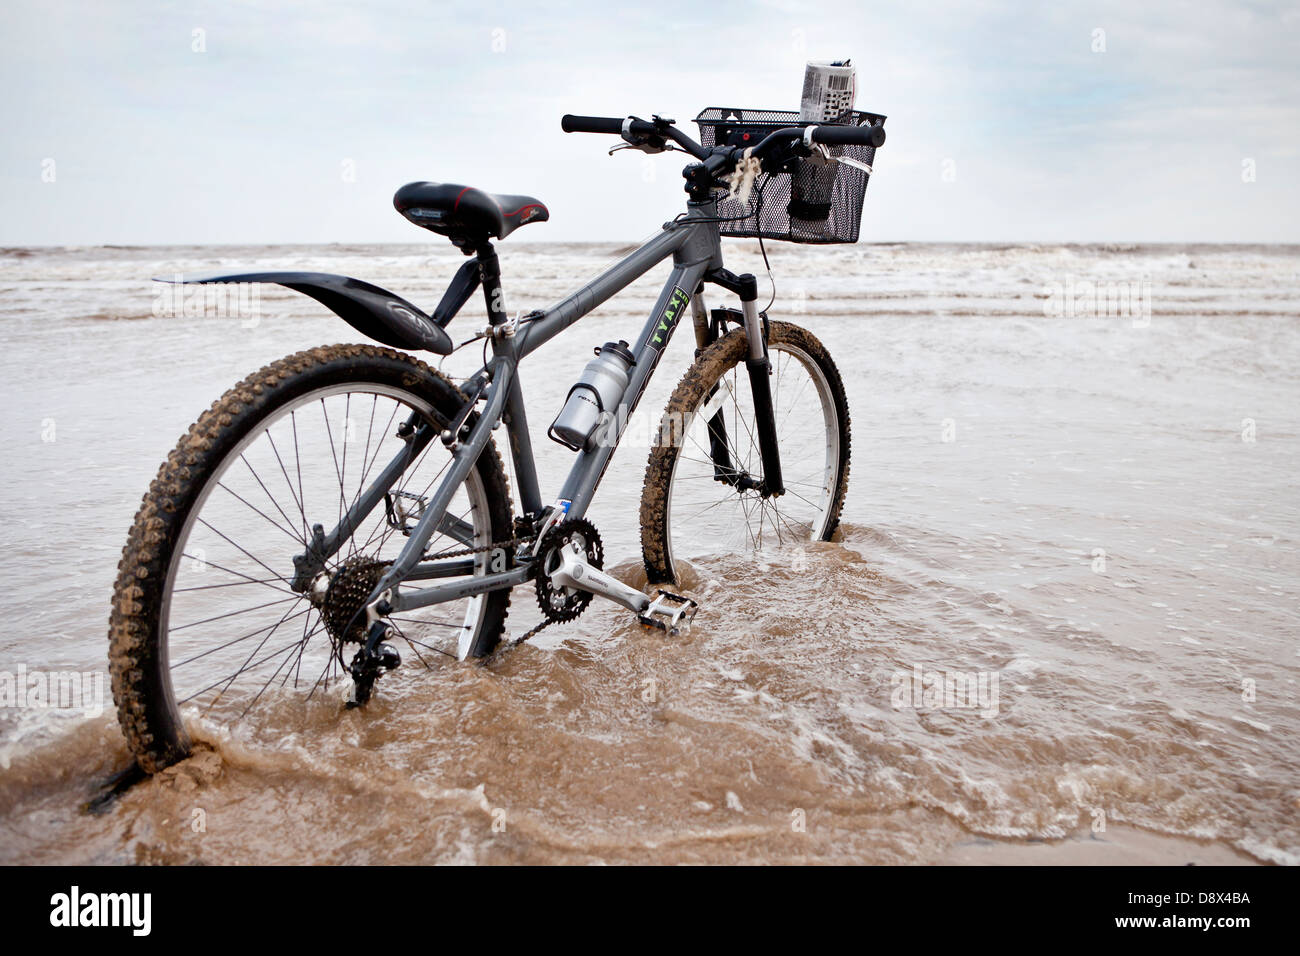 Bild von Arcanum-Serie zeigen einsame Fahrrad mit Blick auf Meer mit abgeschlossenen Kreuzworträtsel in Korb, offen für Interpretationen der Zuschauer. Stockfoto